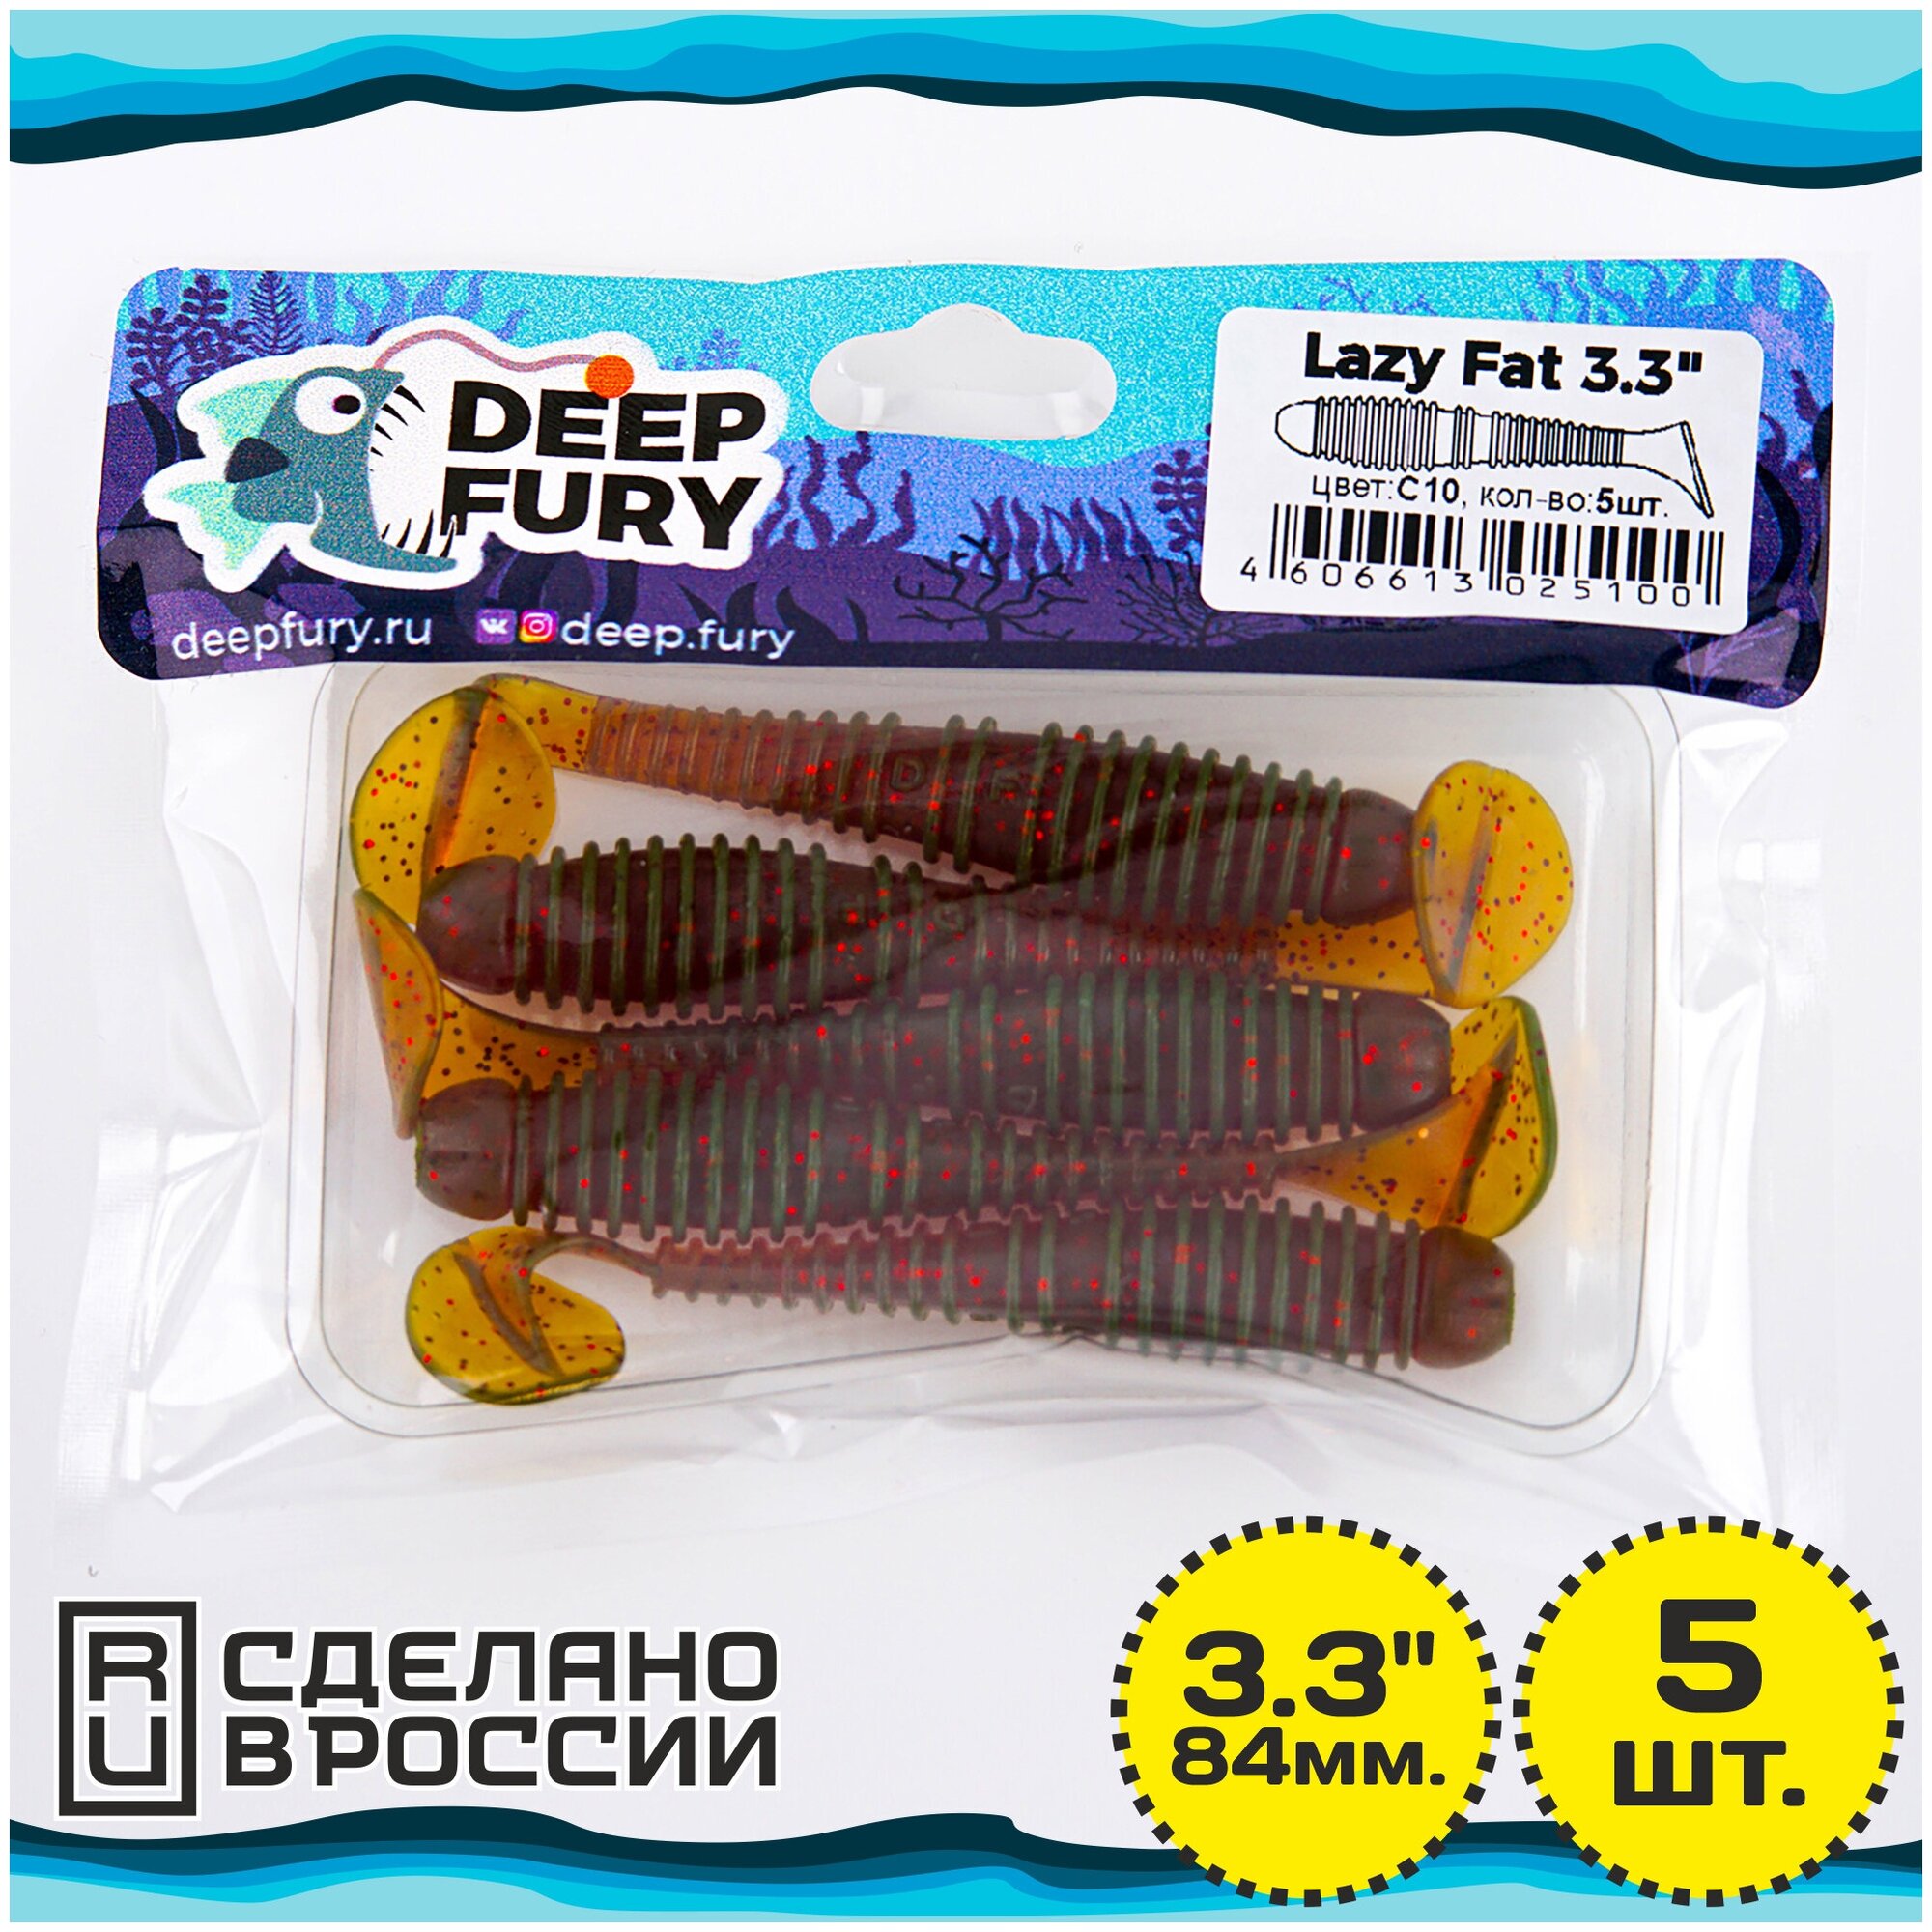   Deep Fury Lazy Fat 3.3" (84 .)  c10